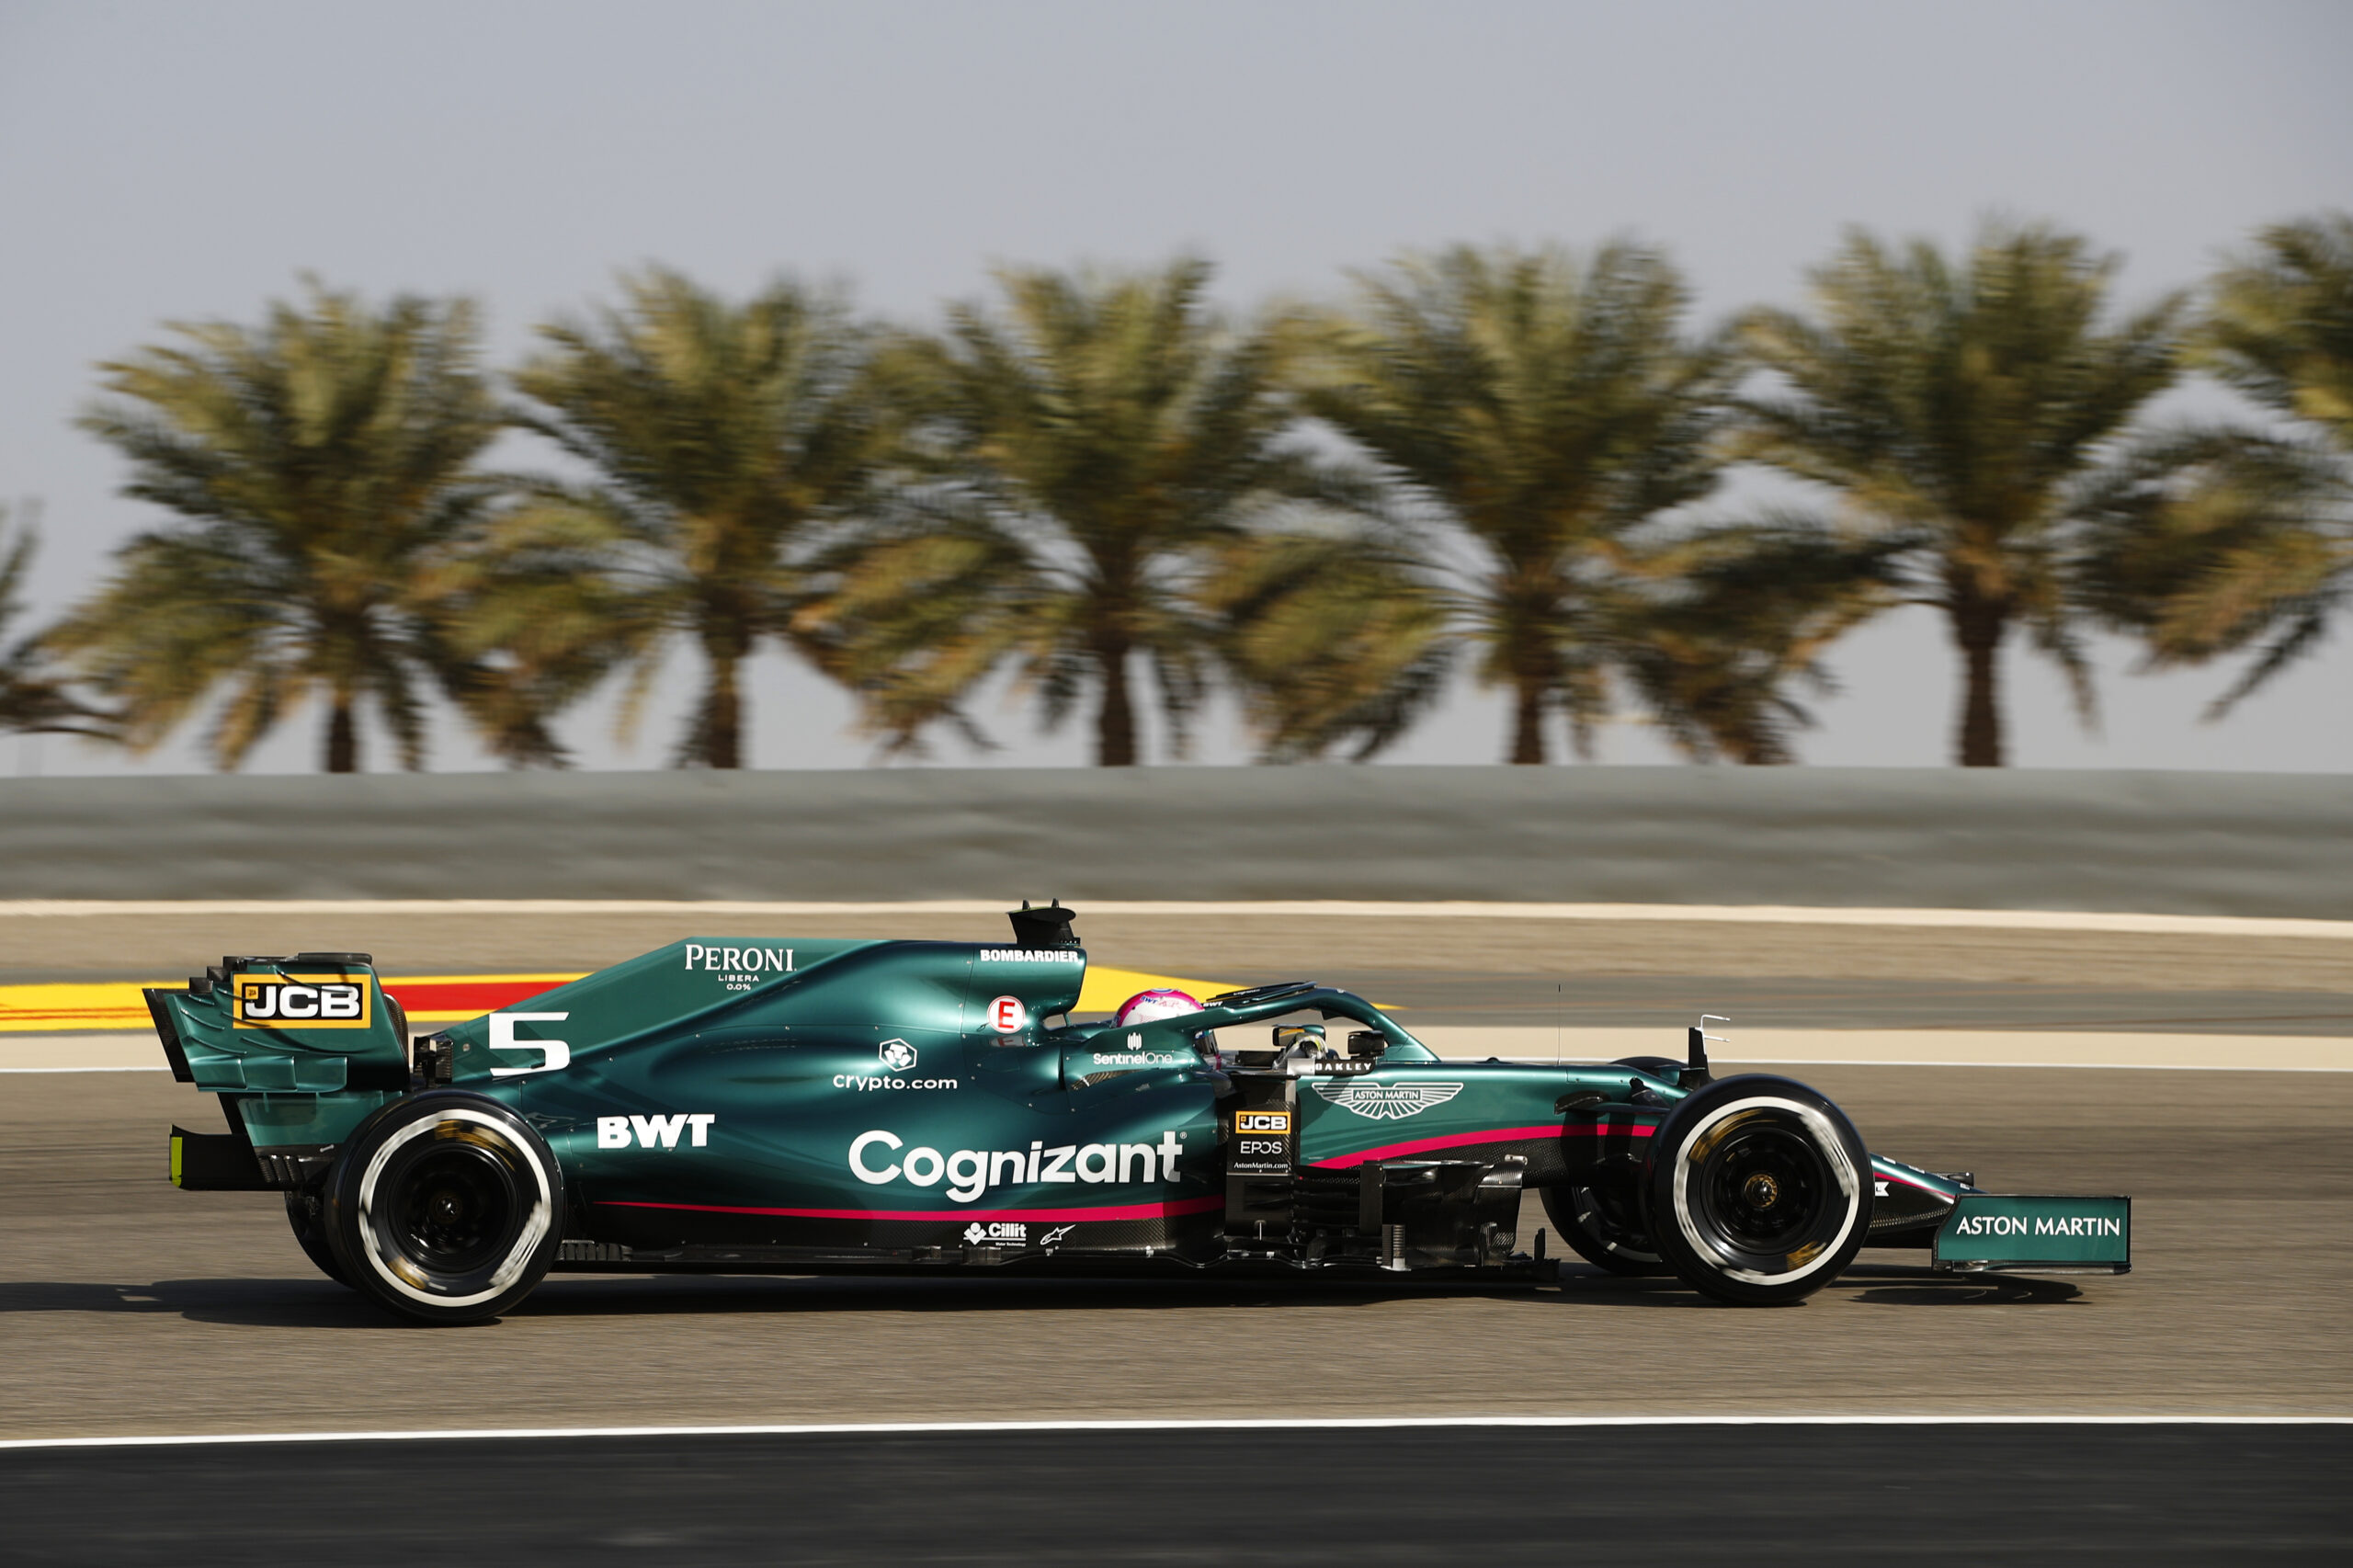 F1 - Aston Martin a eu un "réveil brutal" après les qualifications à Bahreïn